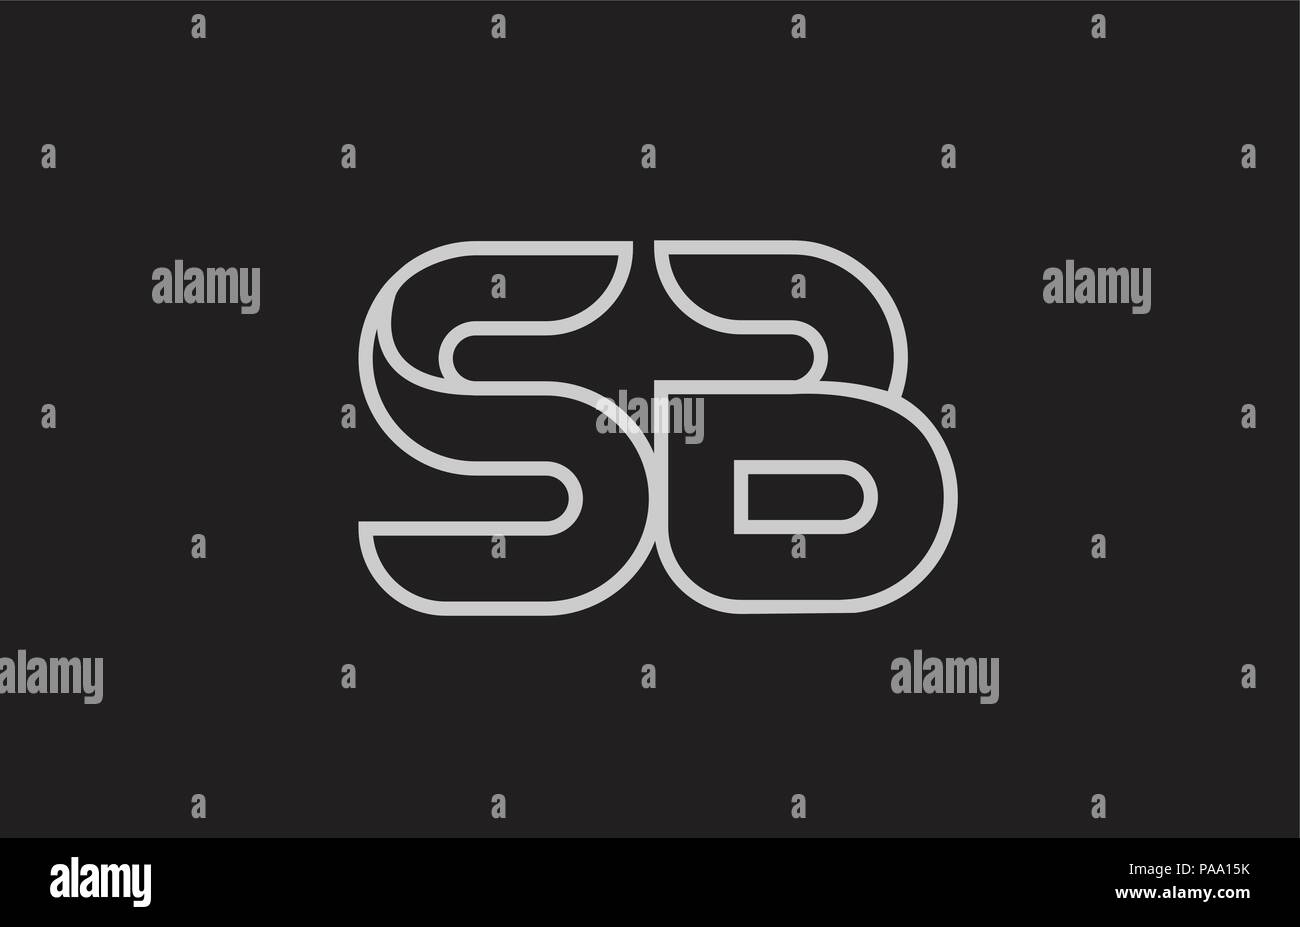 Schwarze und weiße Buchstaben sb s b logo Kombination design geeignet für ein Unternehmen oder ein Geschäft Stock Vektor